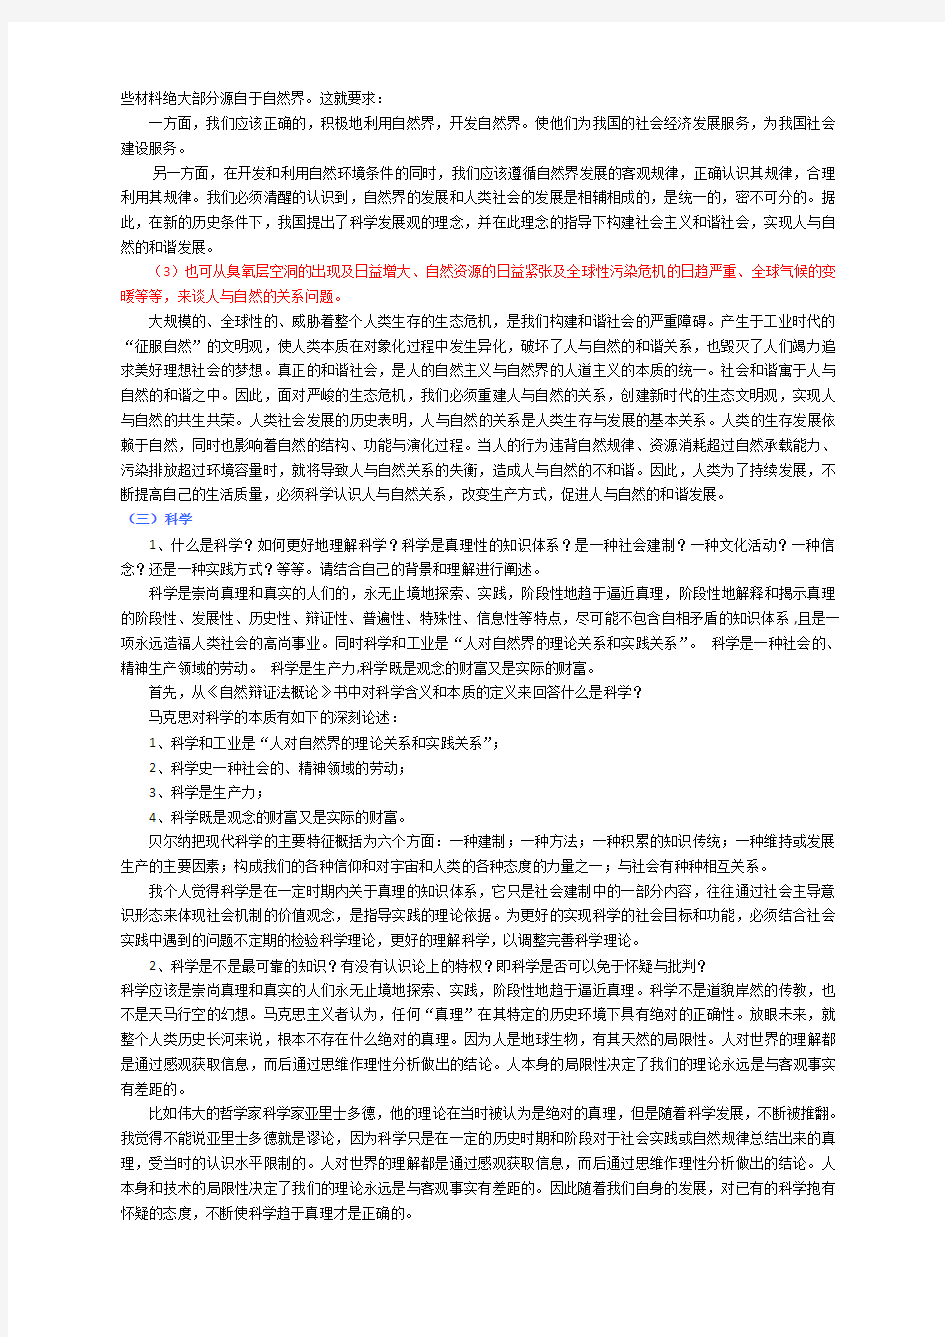 (完整版)上海大学自然辩证法考试整理